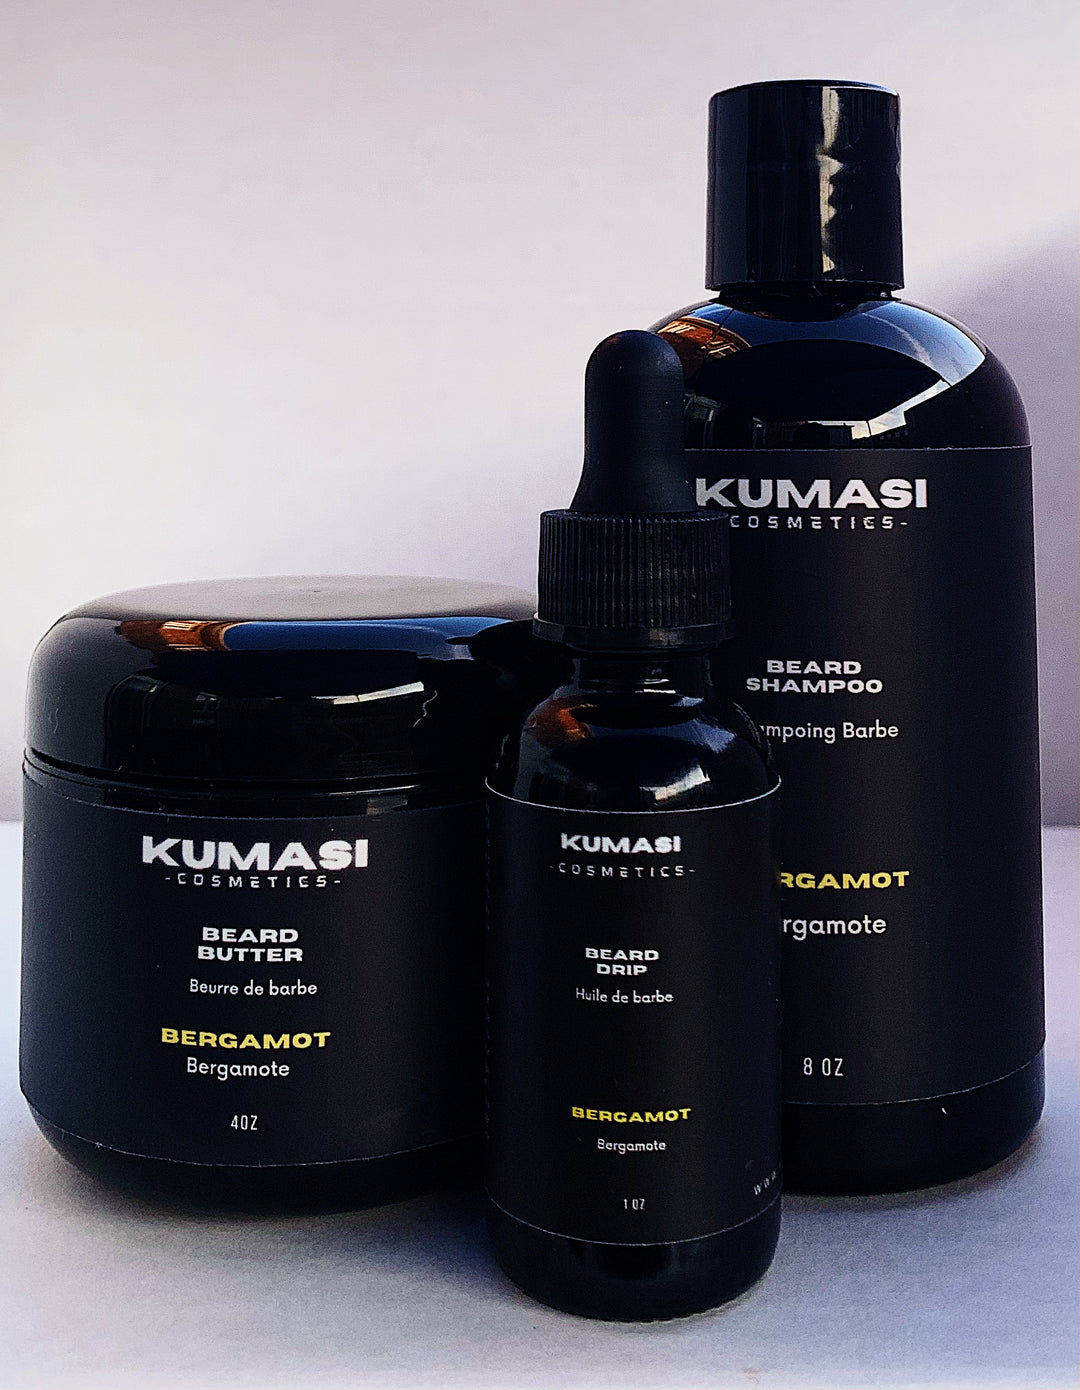 Kumasi Cosmetics Beard Kit